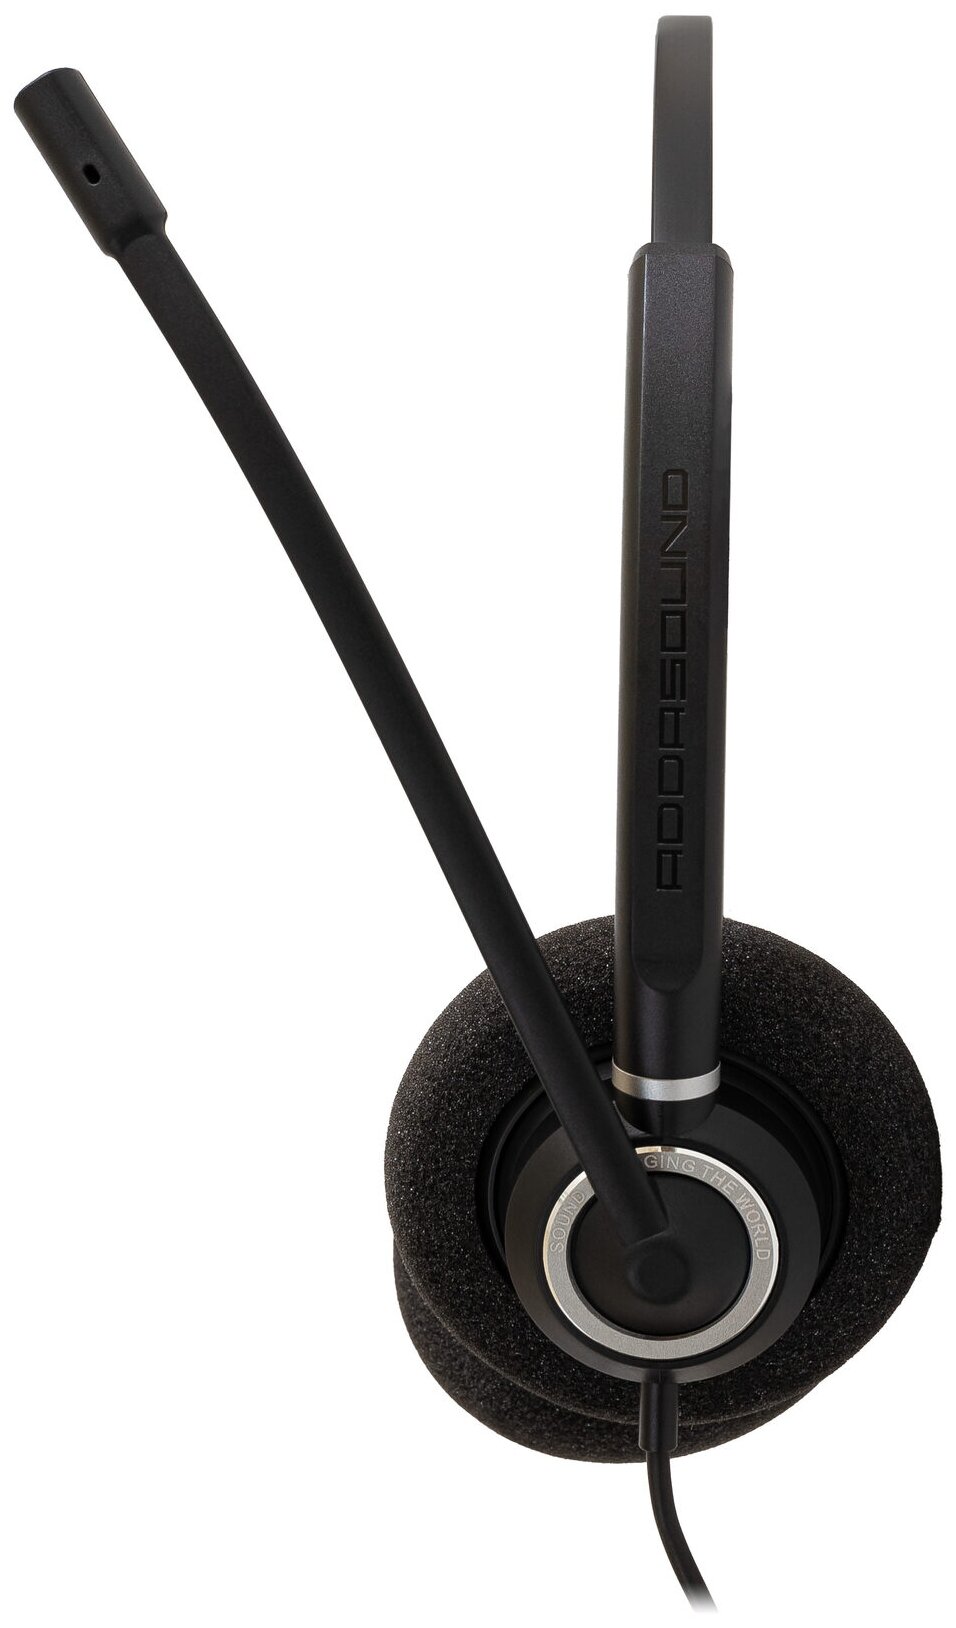 Профессиональные наушники с микрофоном ADDASOUND Epic 842, USB-A, шумоподавление, 100% UC совместимость, цвет черный (ADD-EPIC-842)